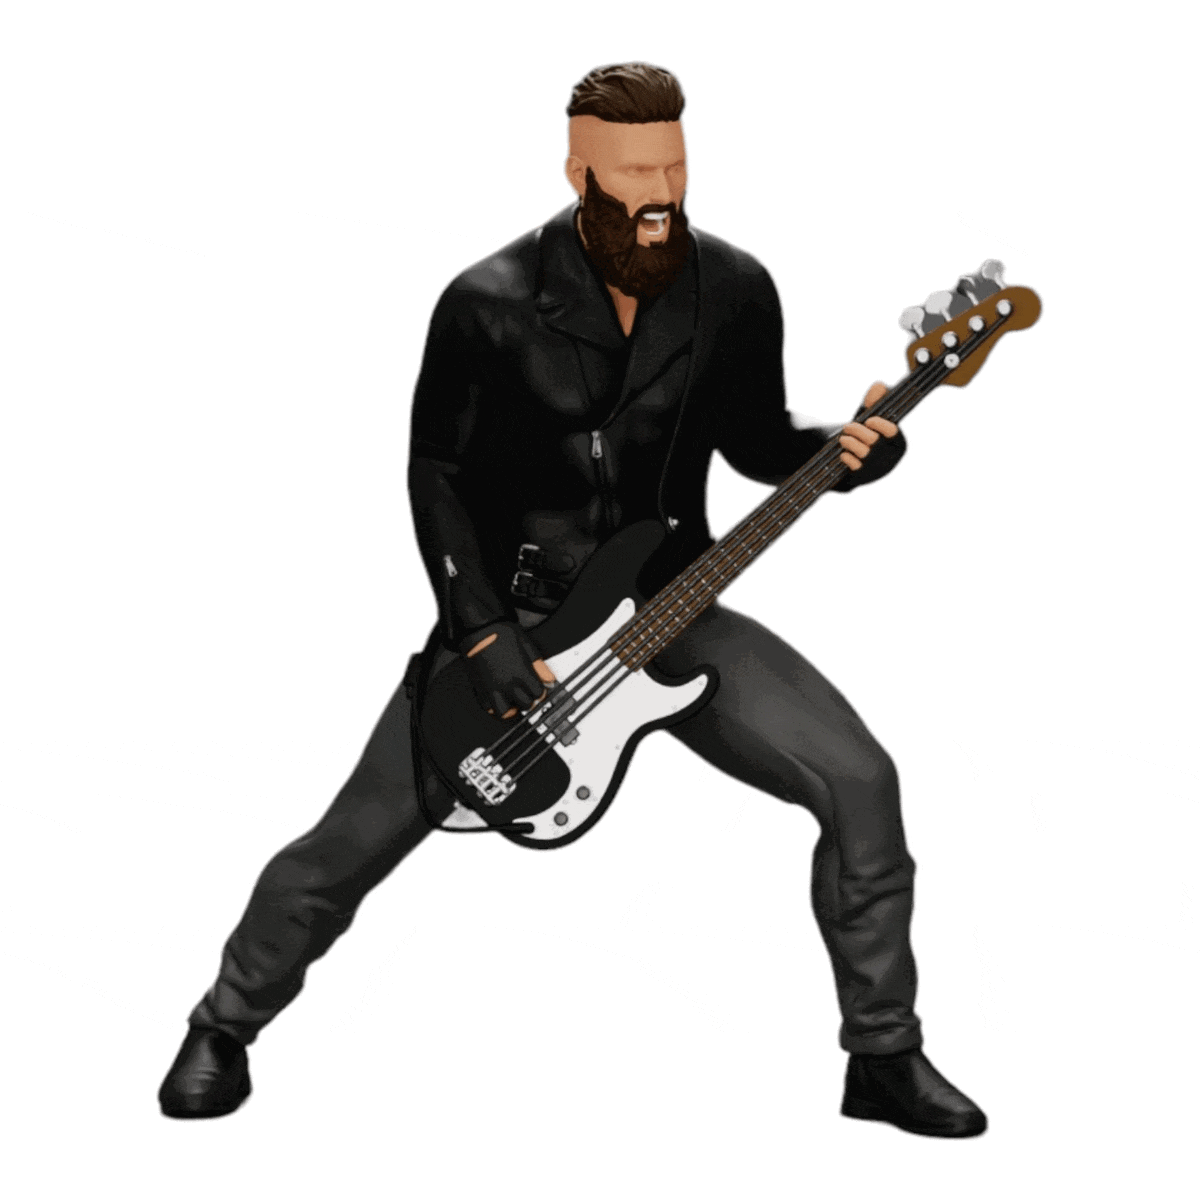 Diorama Modellbau Produktfoto 0: Rockstar spielt Bassgitarre in Lederjacke mit langen Haaren und Bart (Ref Nr. A12)